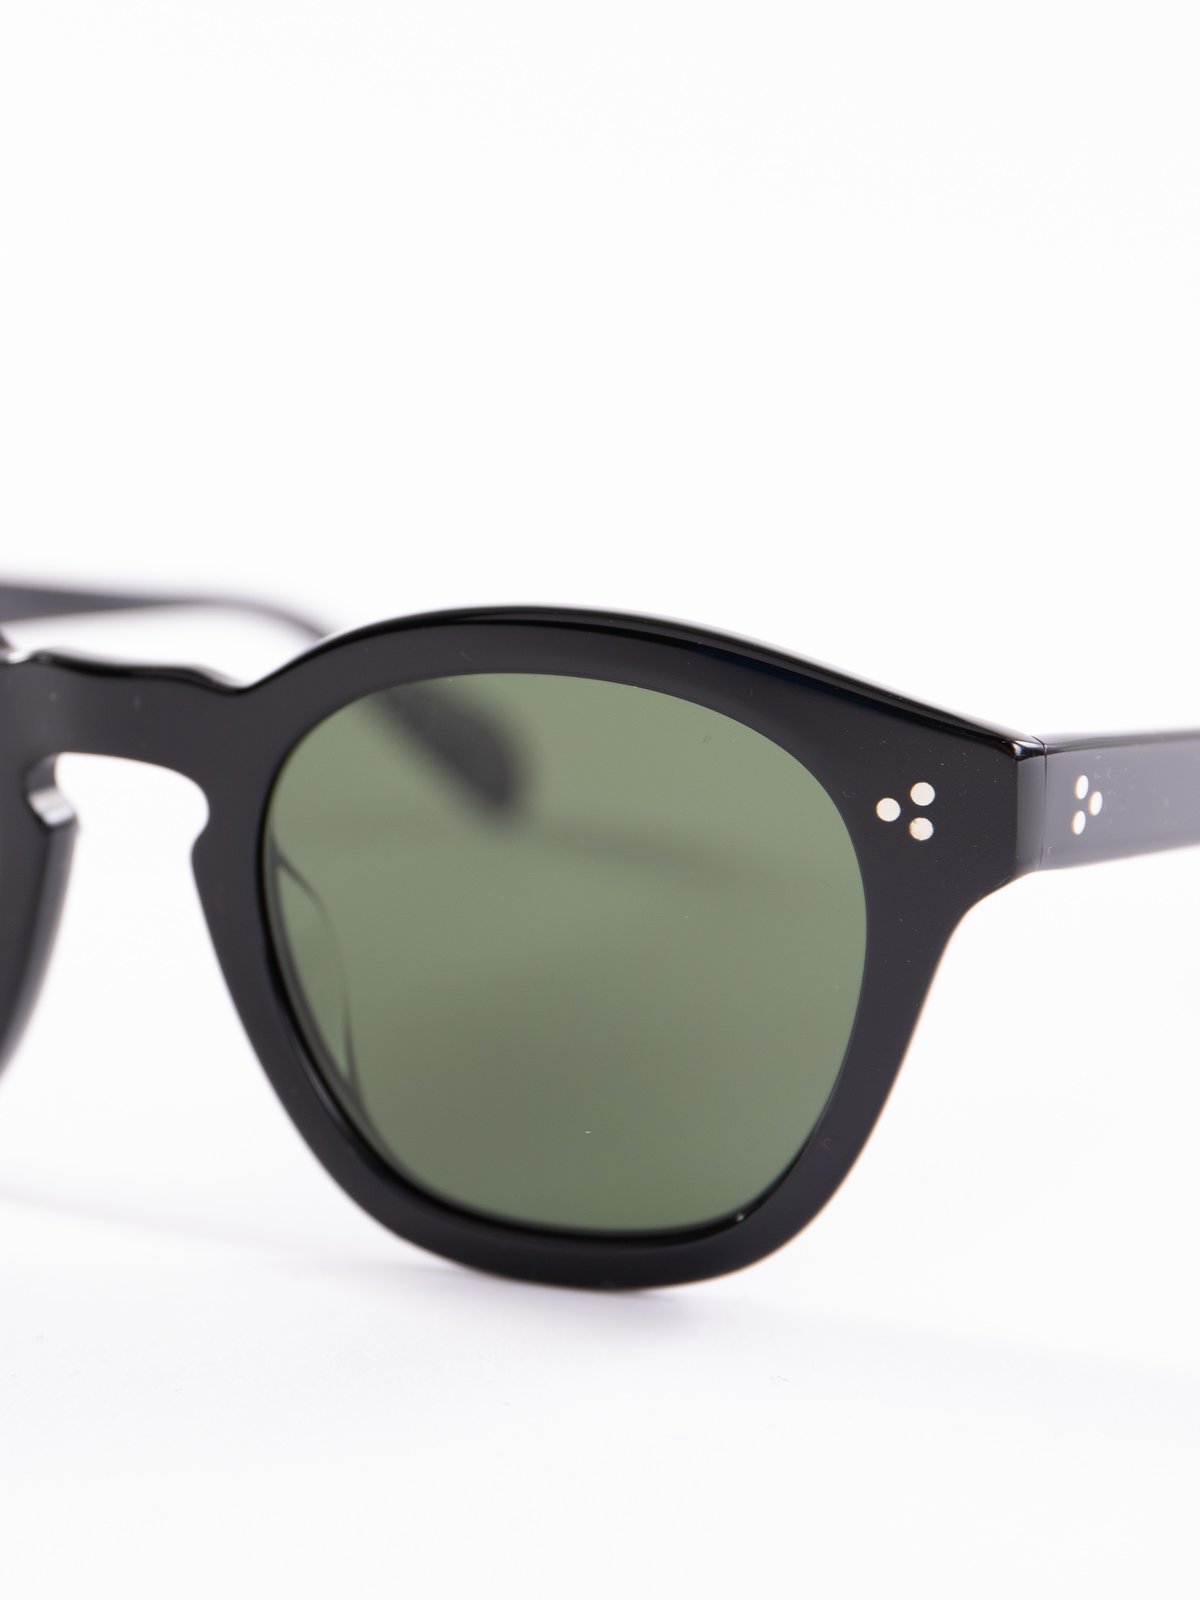 Black/Dark Green Boudreau LA Sunglasses - Image 3